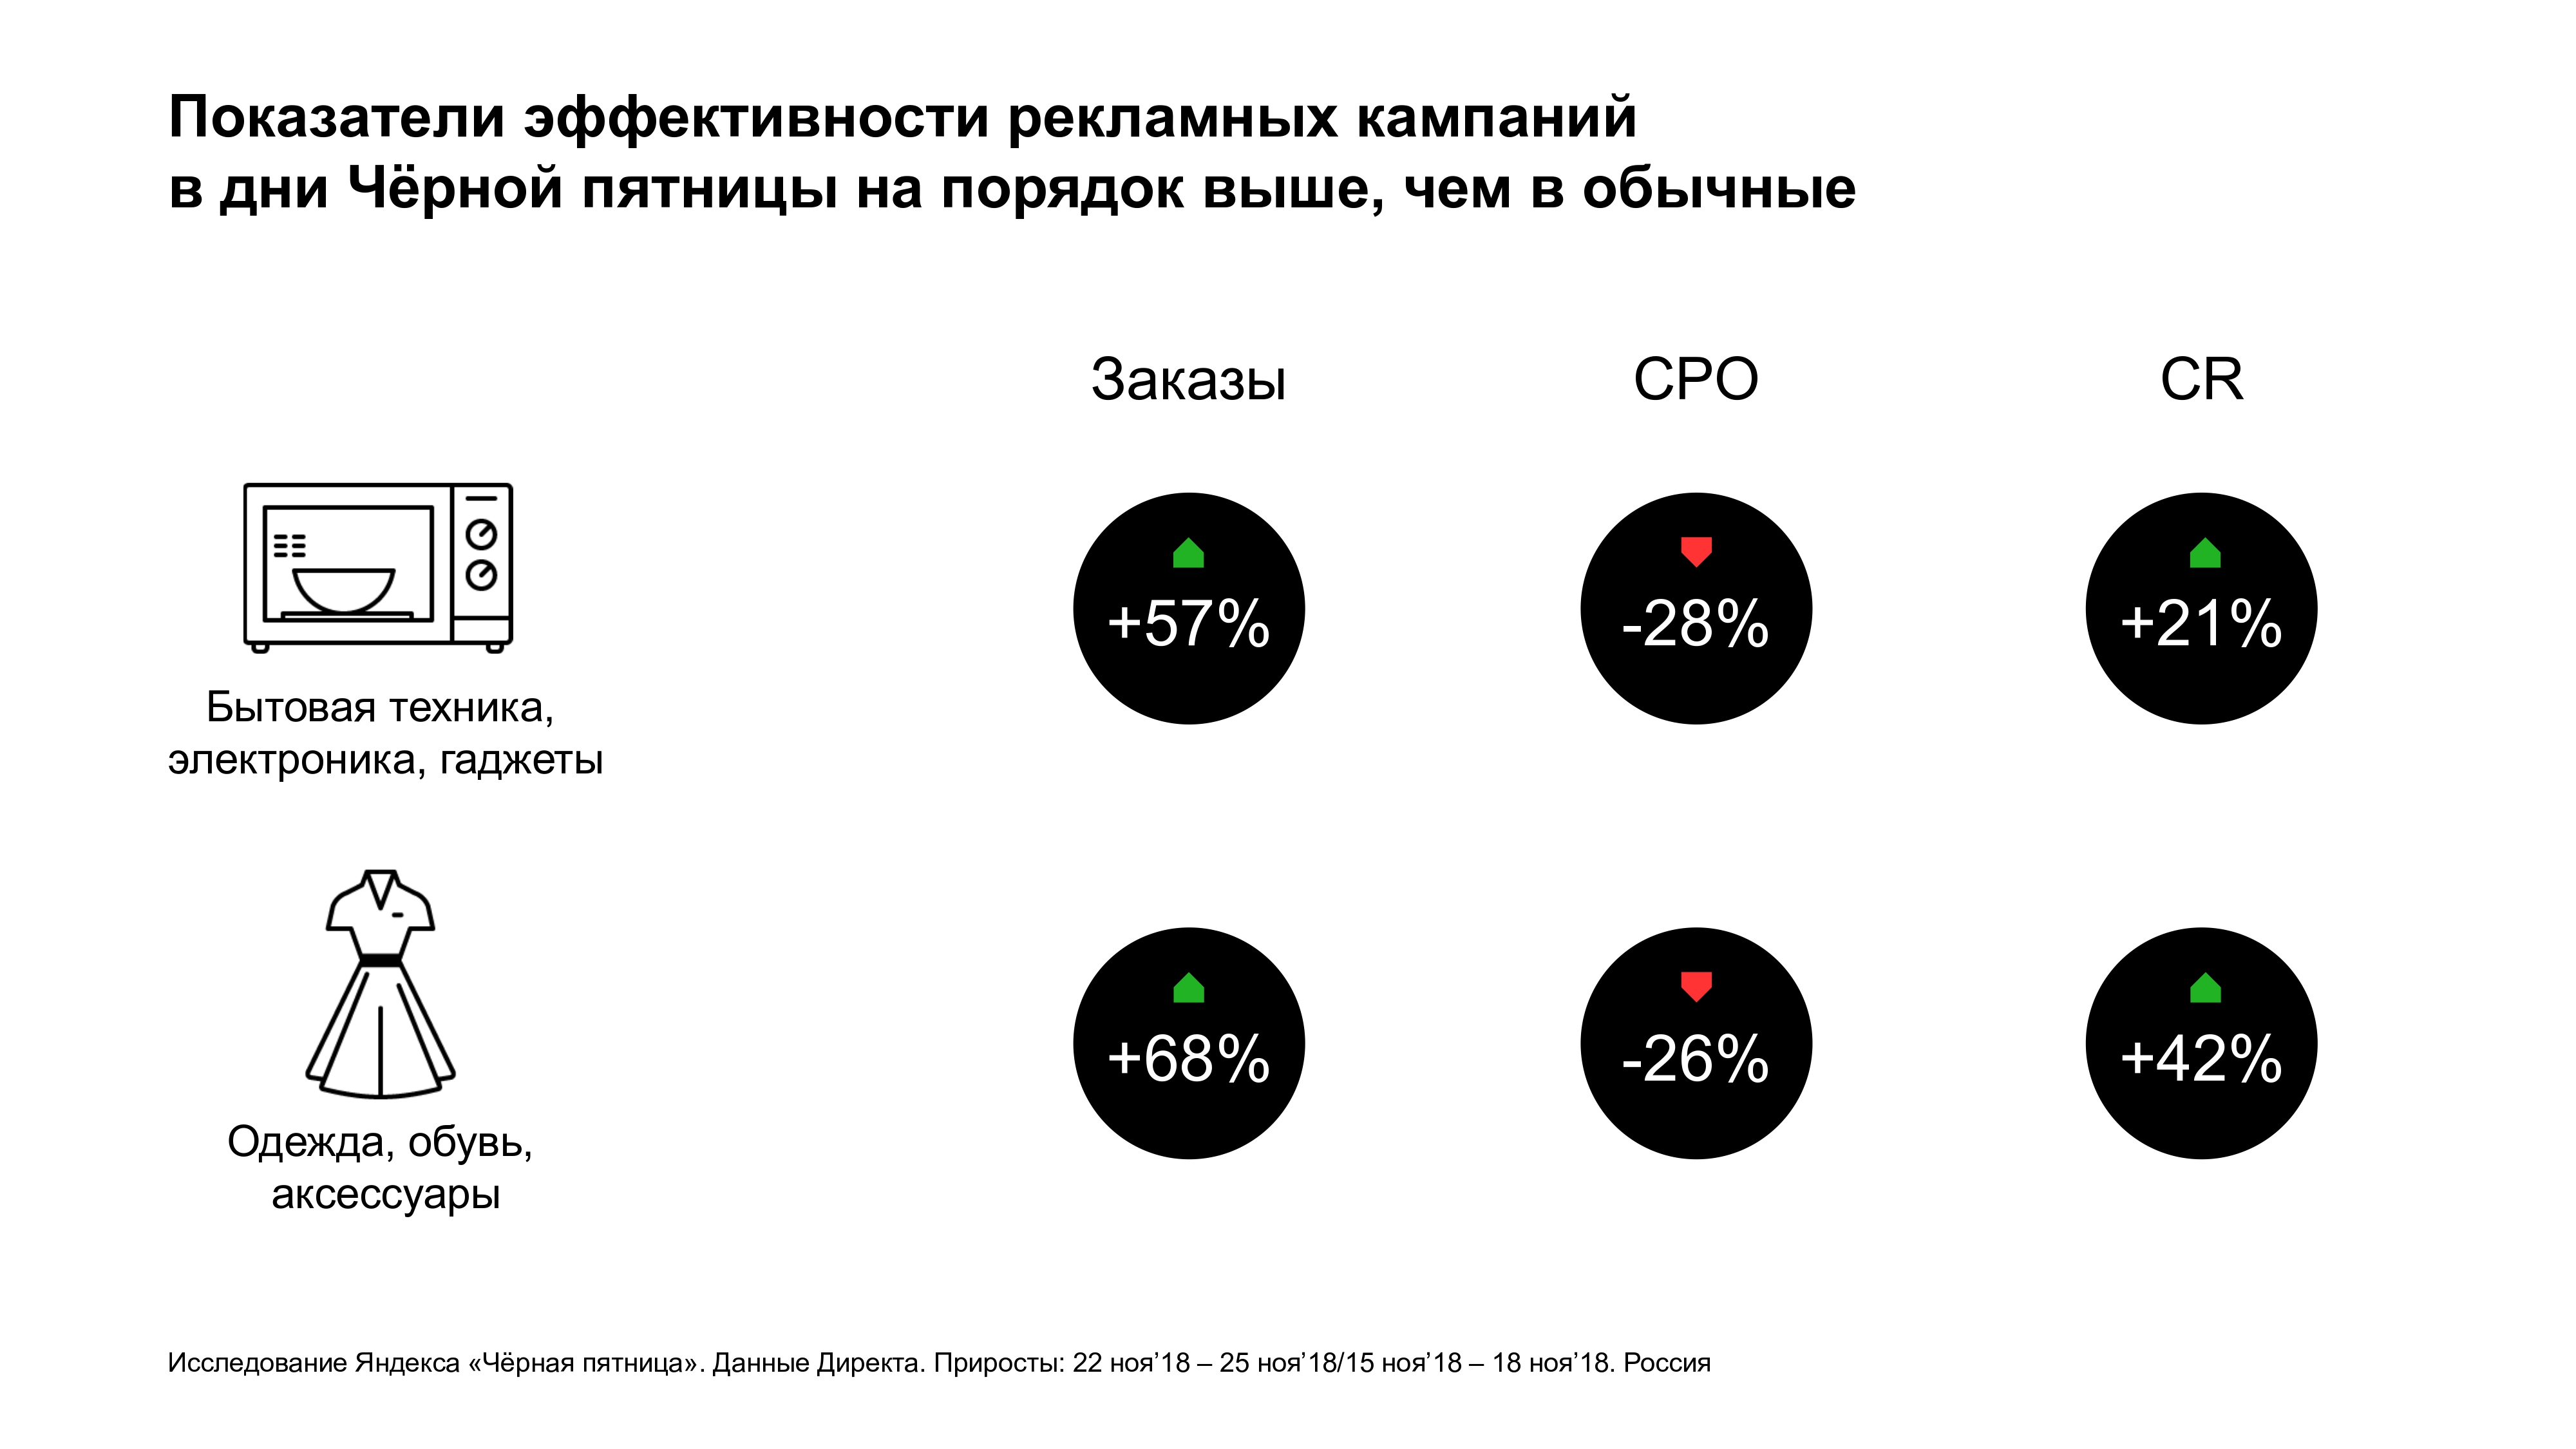 Показатели эффективности рекламных кампаний в Чёрную пятницу - Яндекс